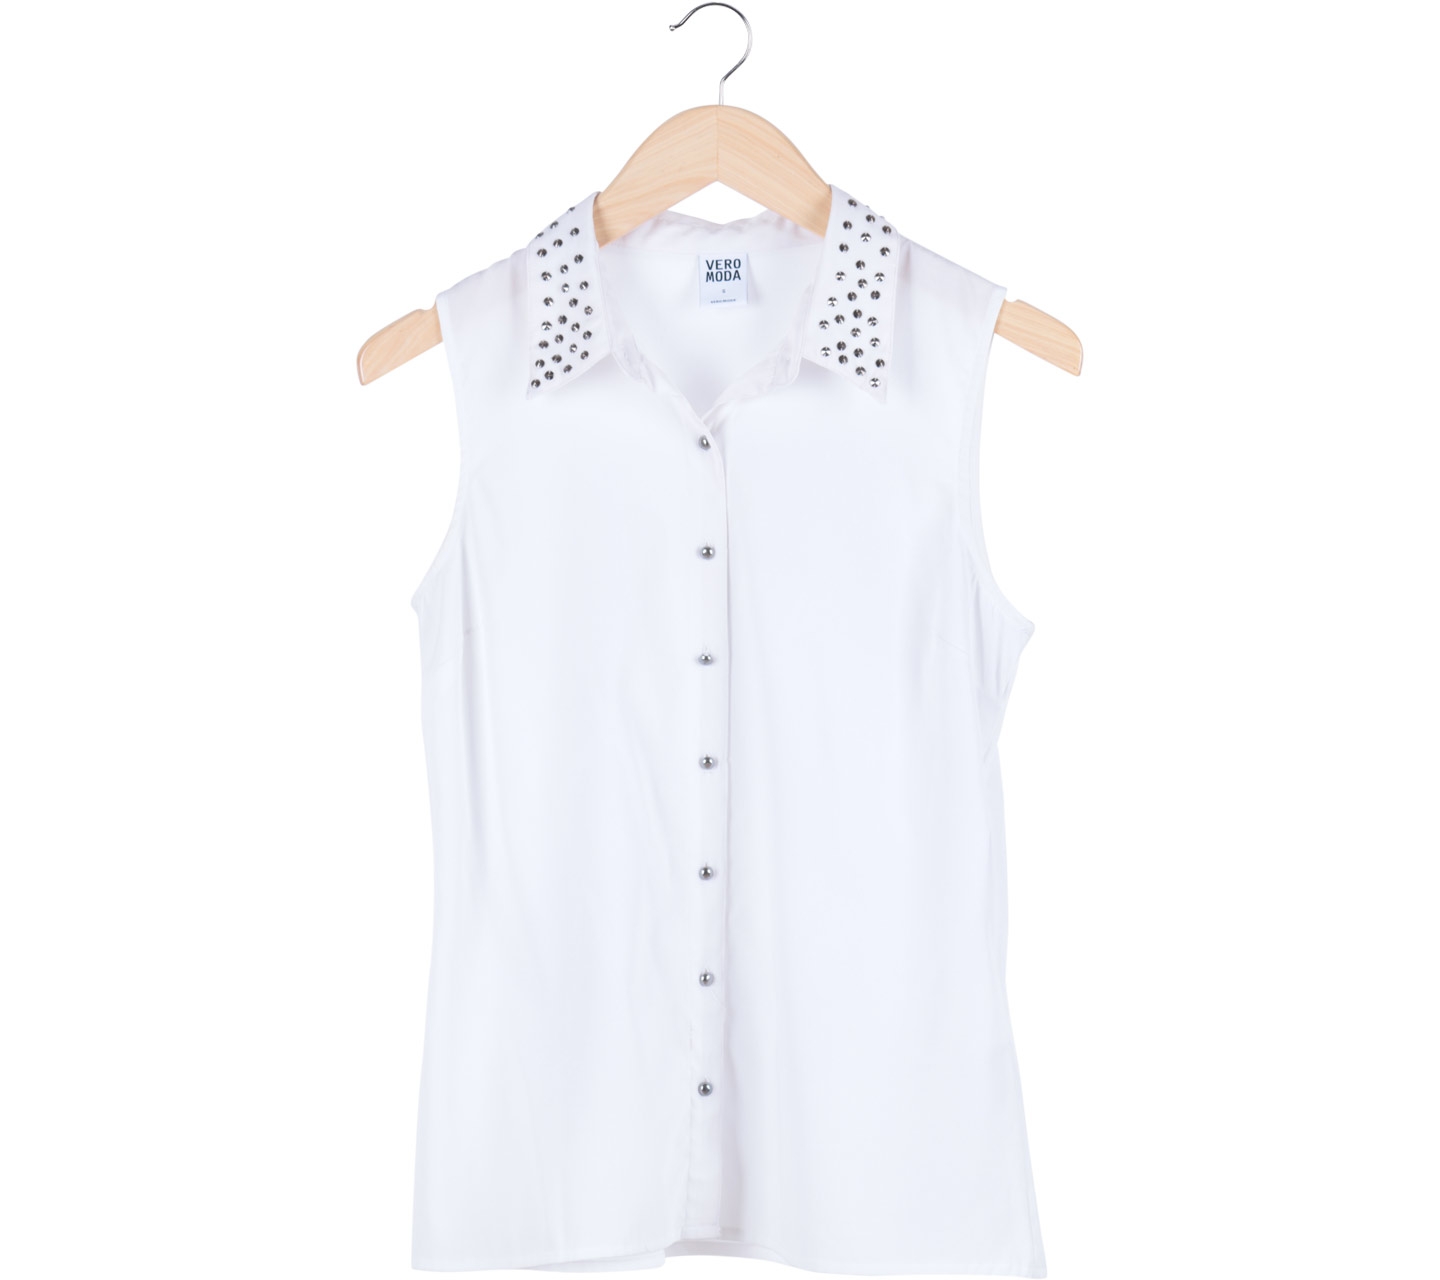 Vero Moda White Beaded Sleeveless Shirt